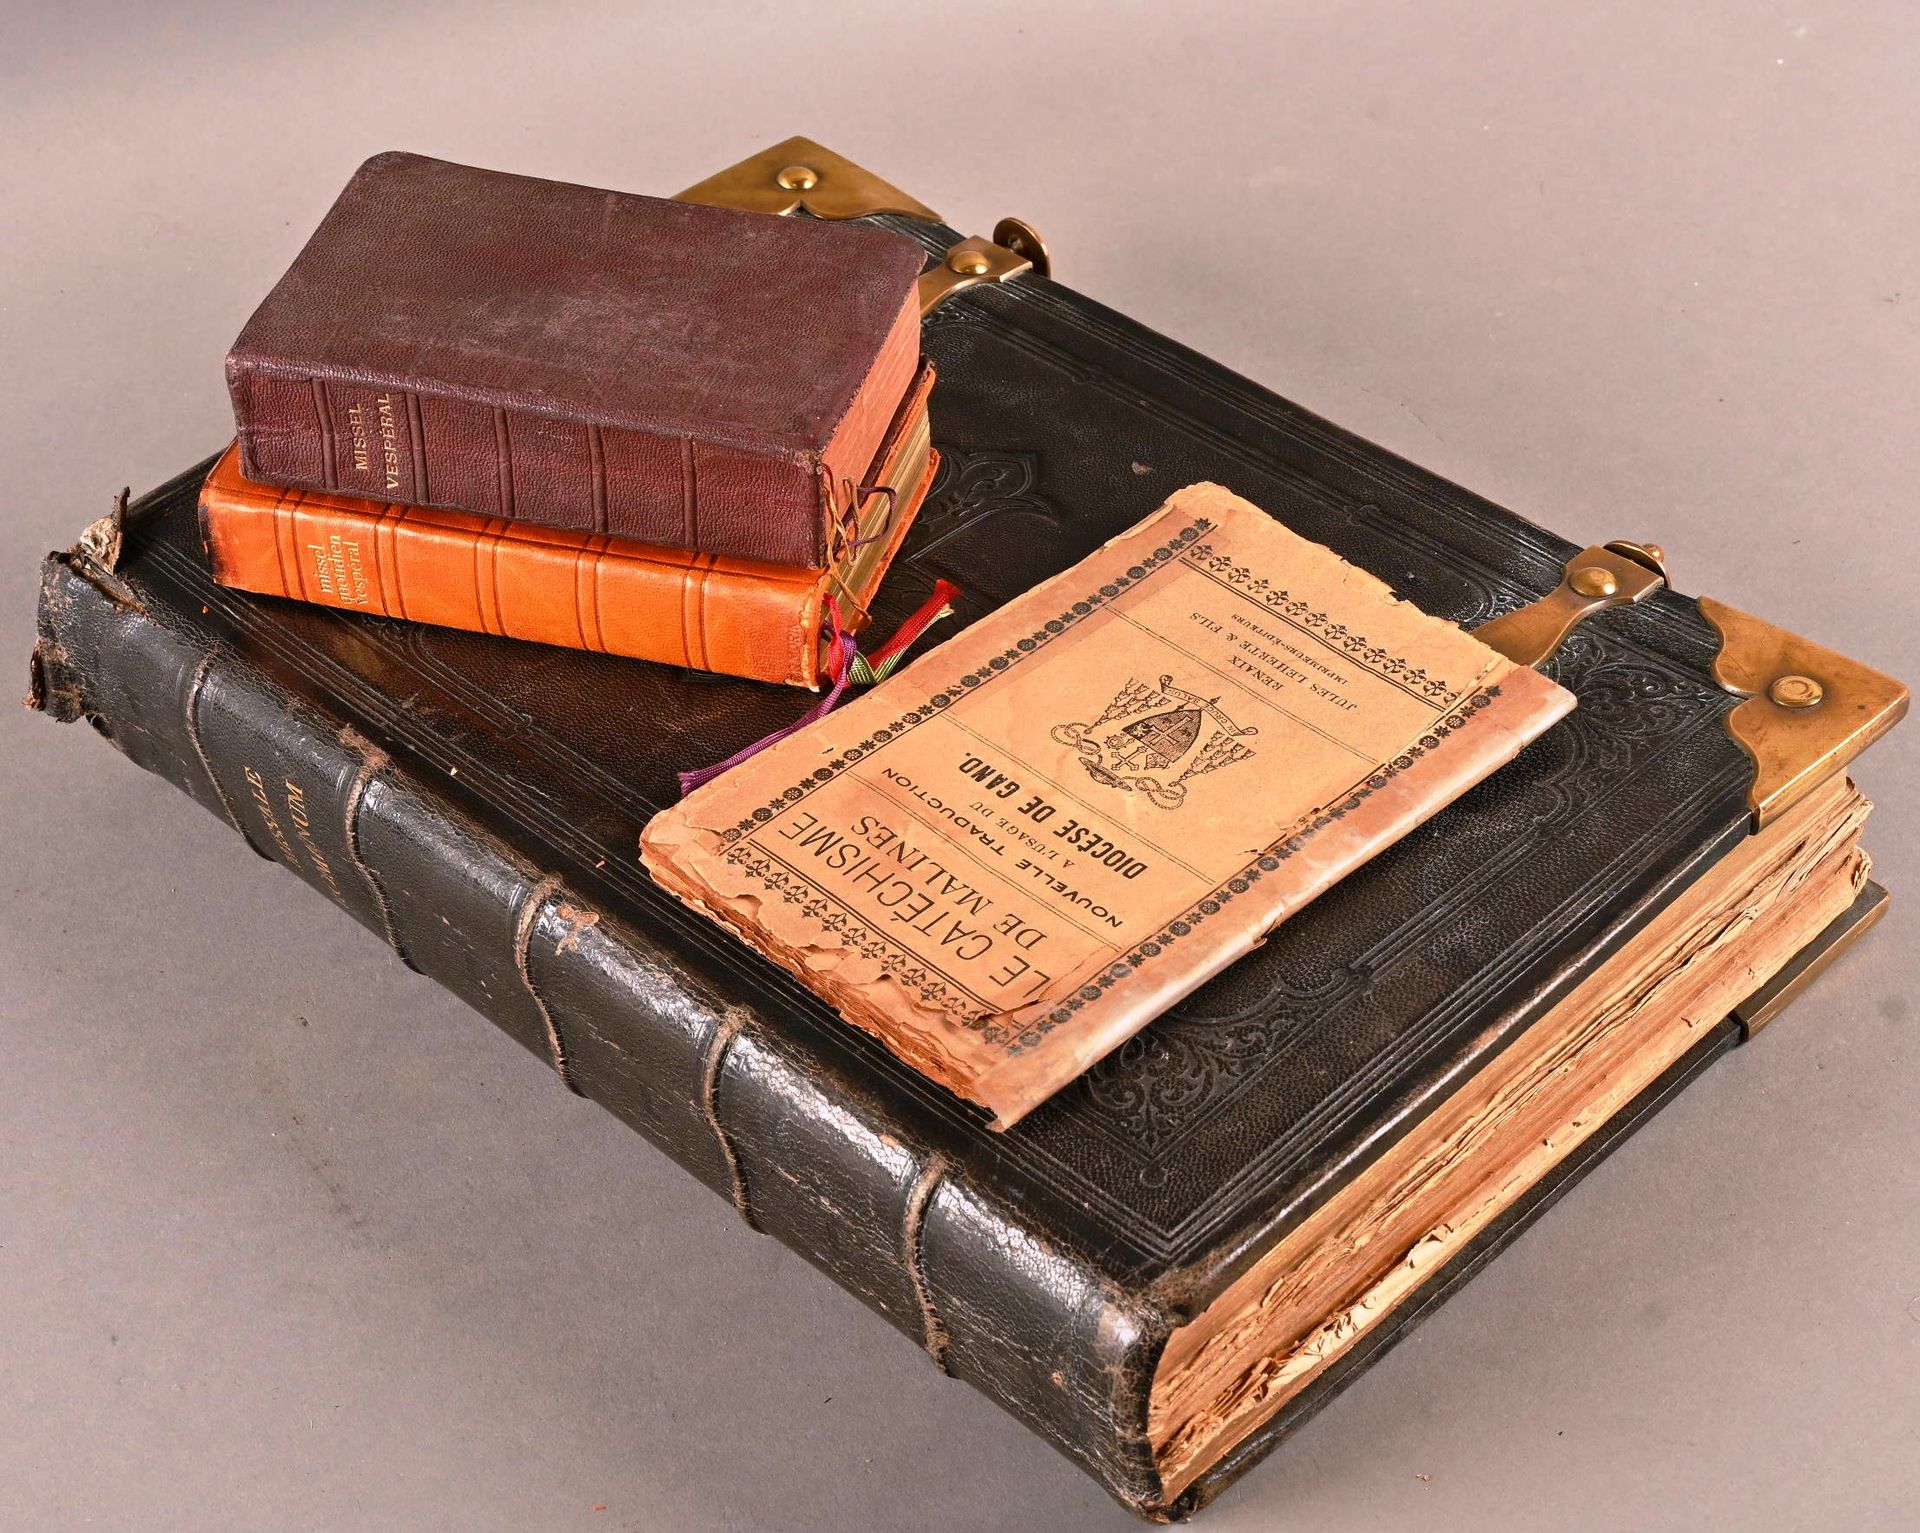 Missale Romanum, 1872. Missale Romanum, 1872年。
处于使用状态，内部有破损和小污点。
还包括：
- 马林斯教义》（T&hellip;